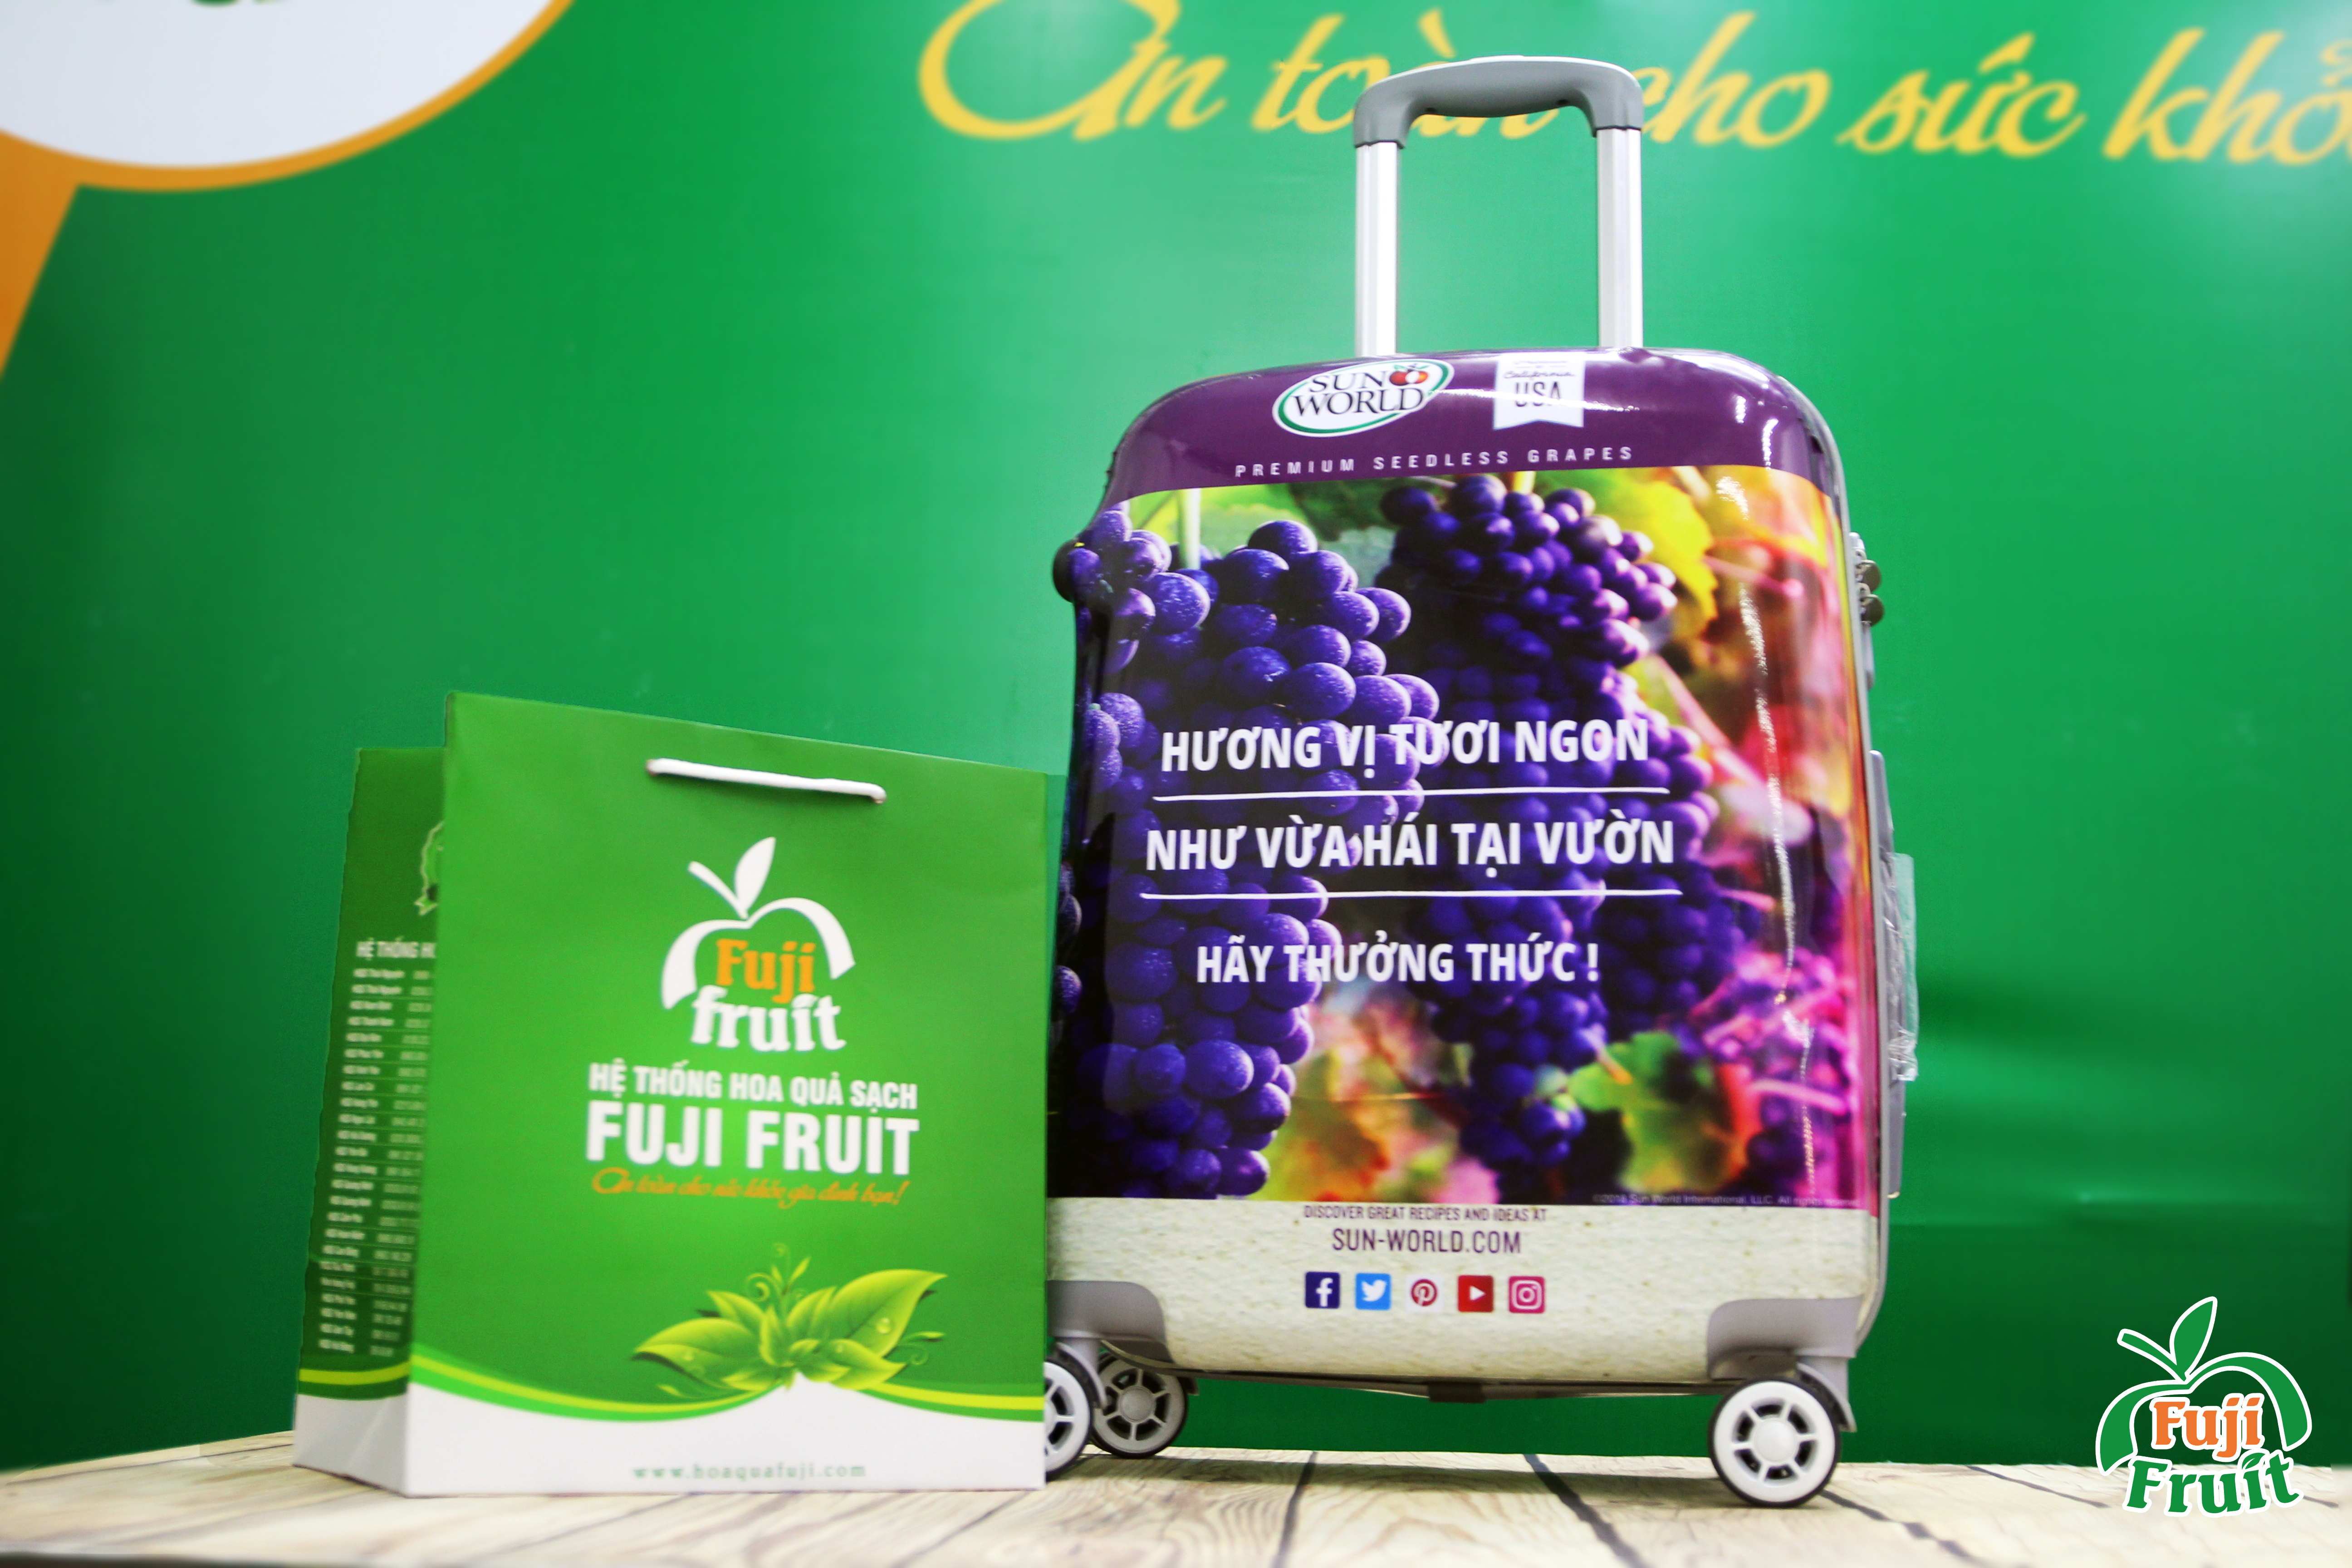 HQS Fuji - Nhà phân phối chiến lược thương hiệu Sun World Grapes VietNam